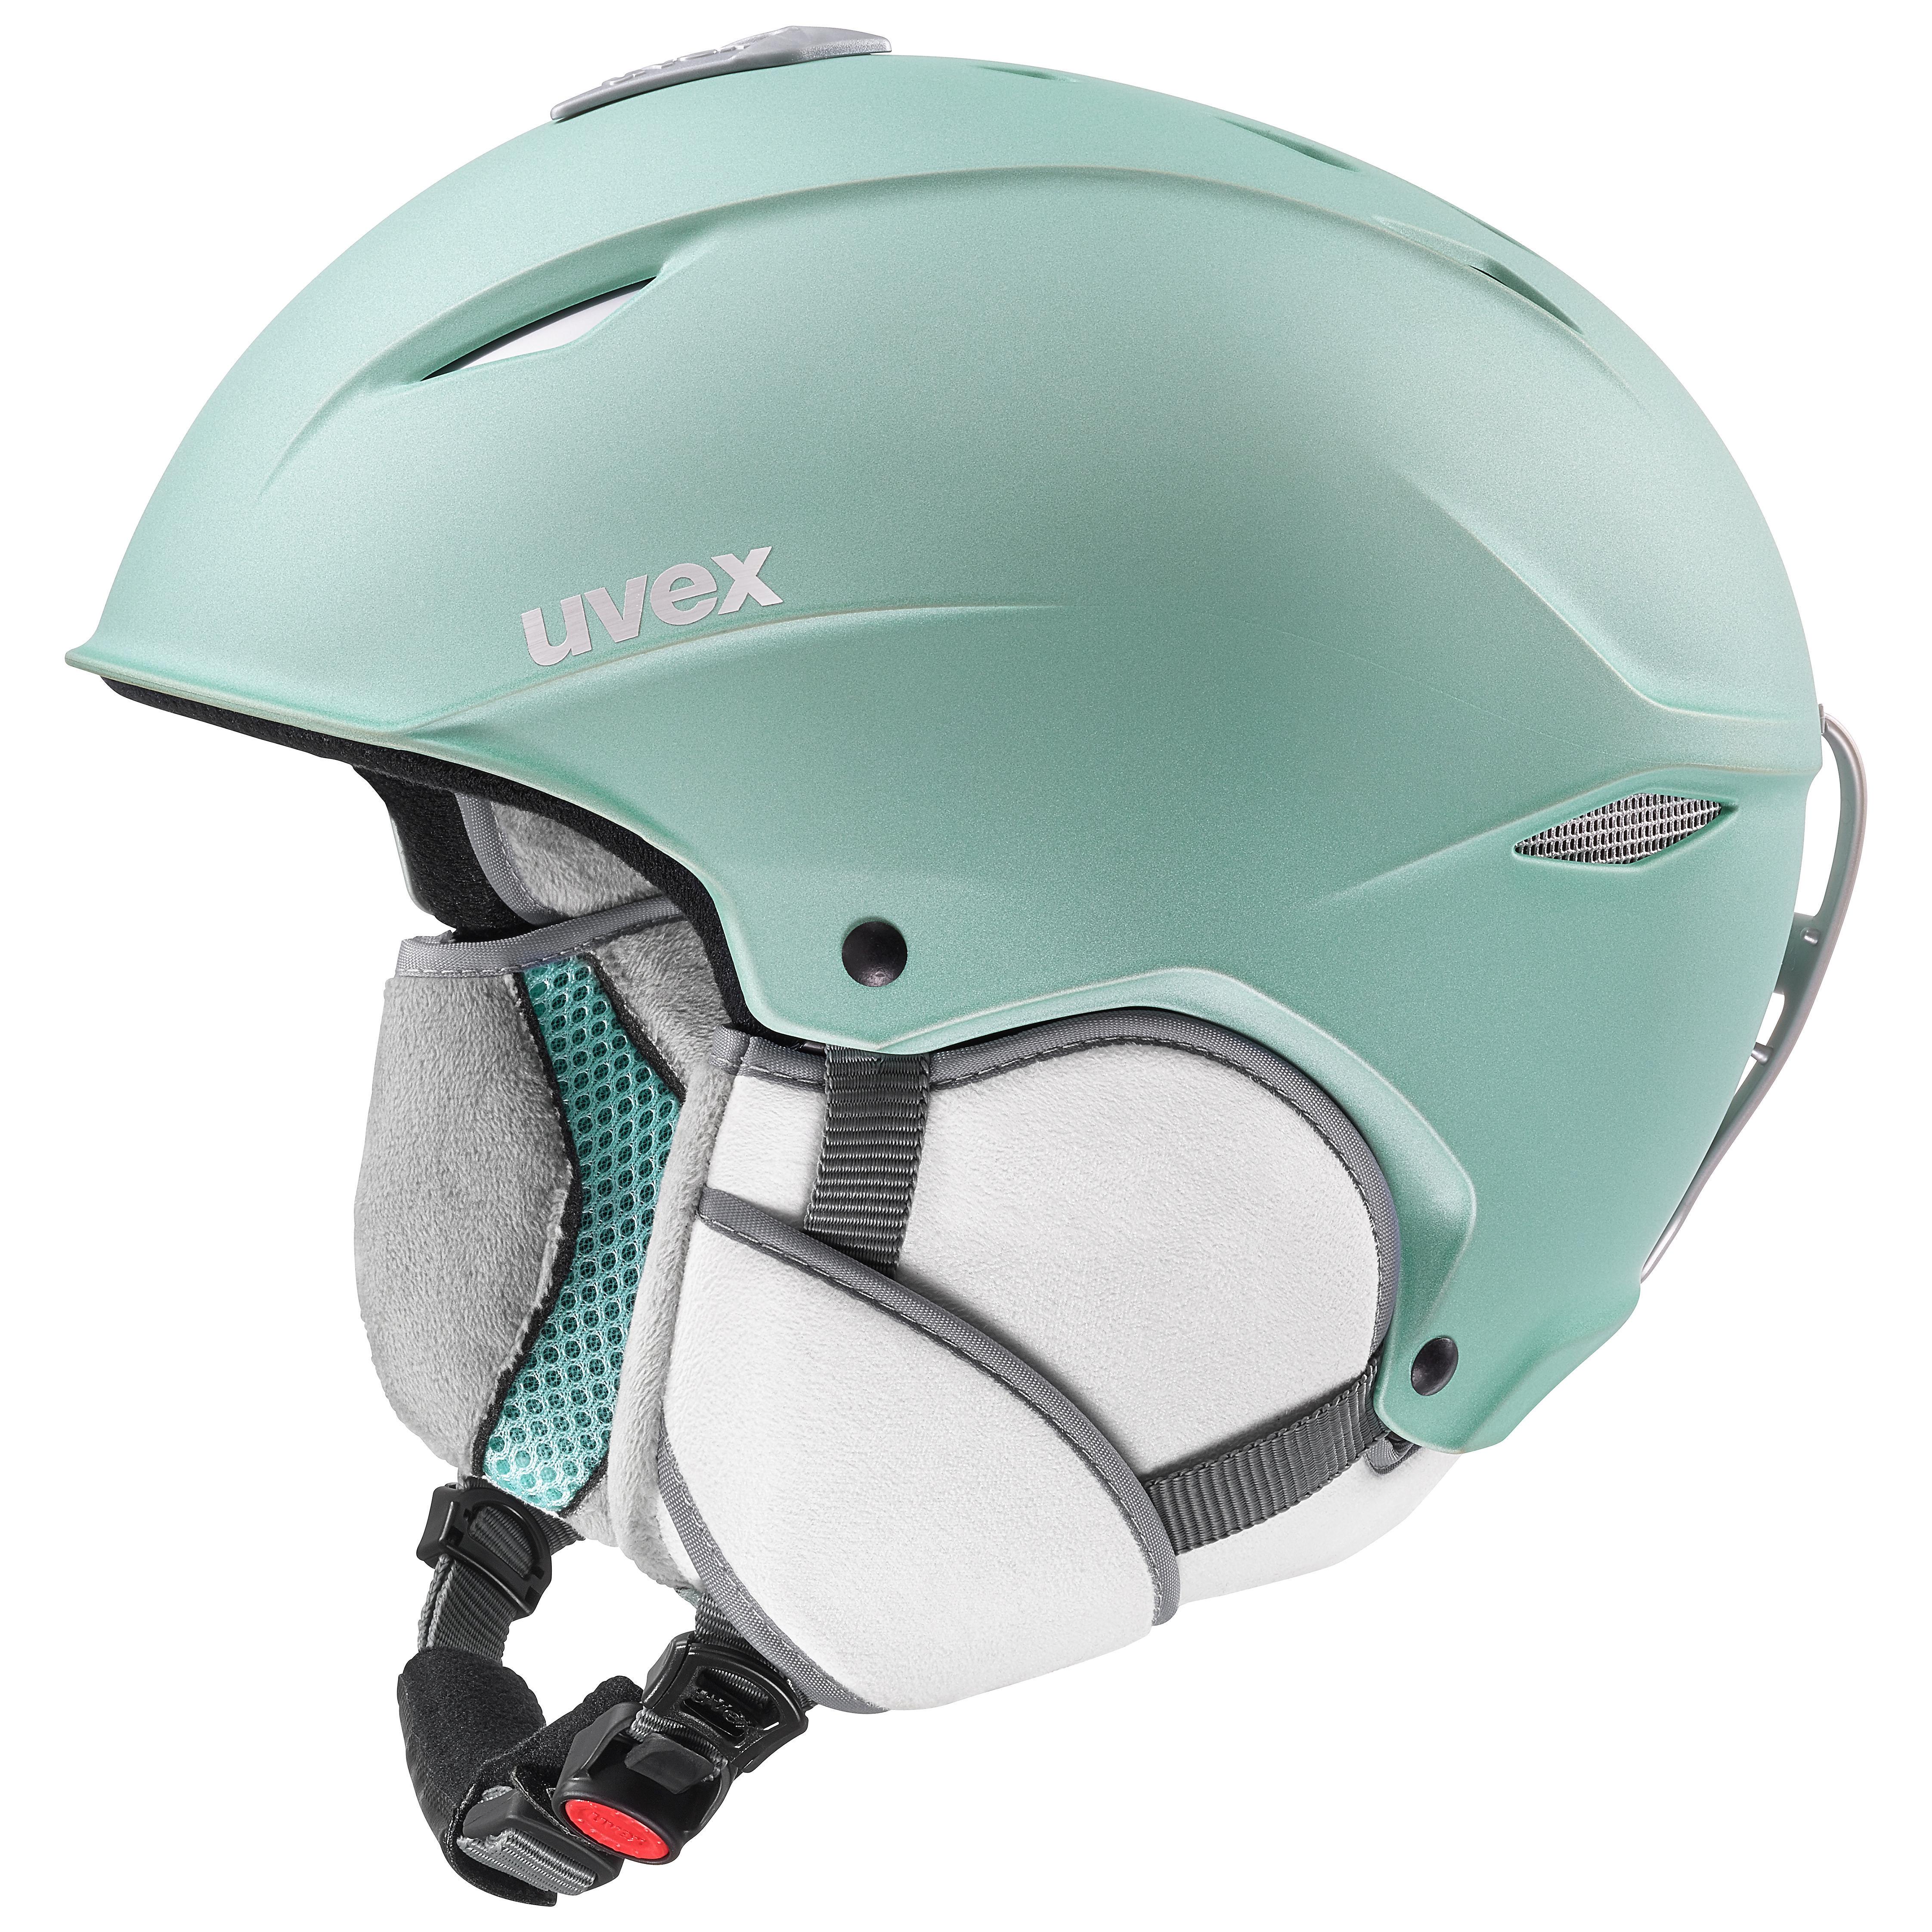 Uvex Adults Ski Helmet - Primo Mint Green 55-59